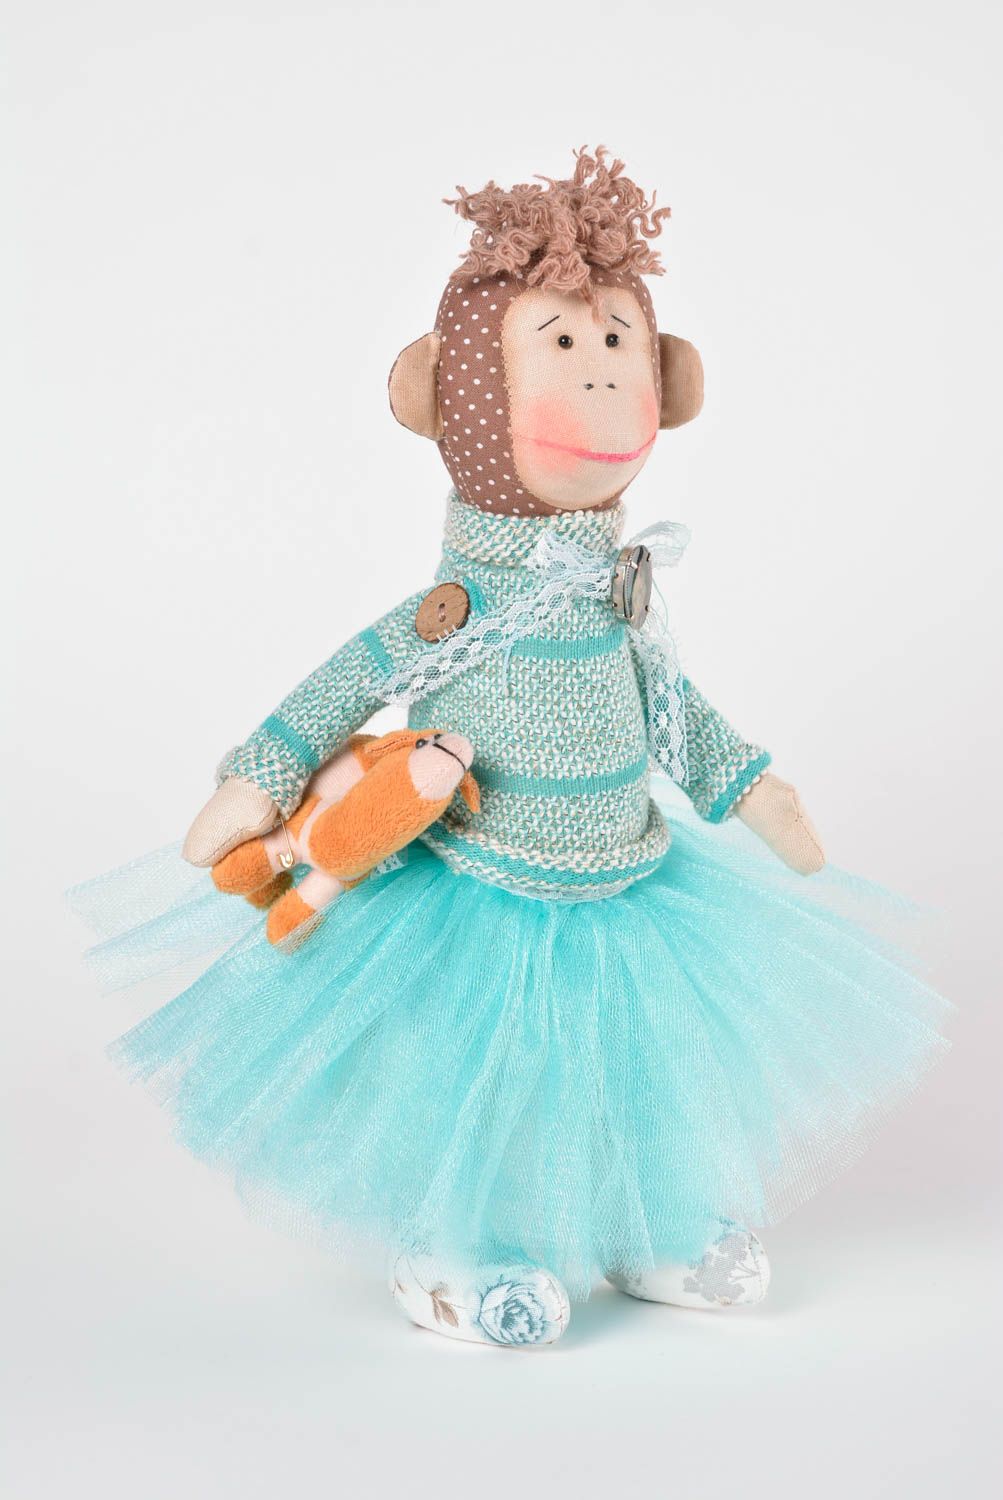 Mono de peluche hecho a mano juguete de tela regalo original elemento decorativo foto 1